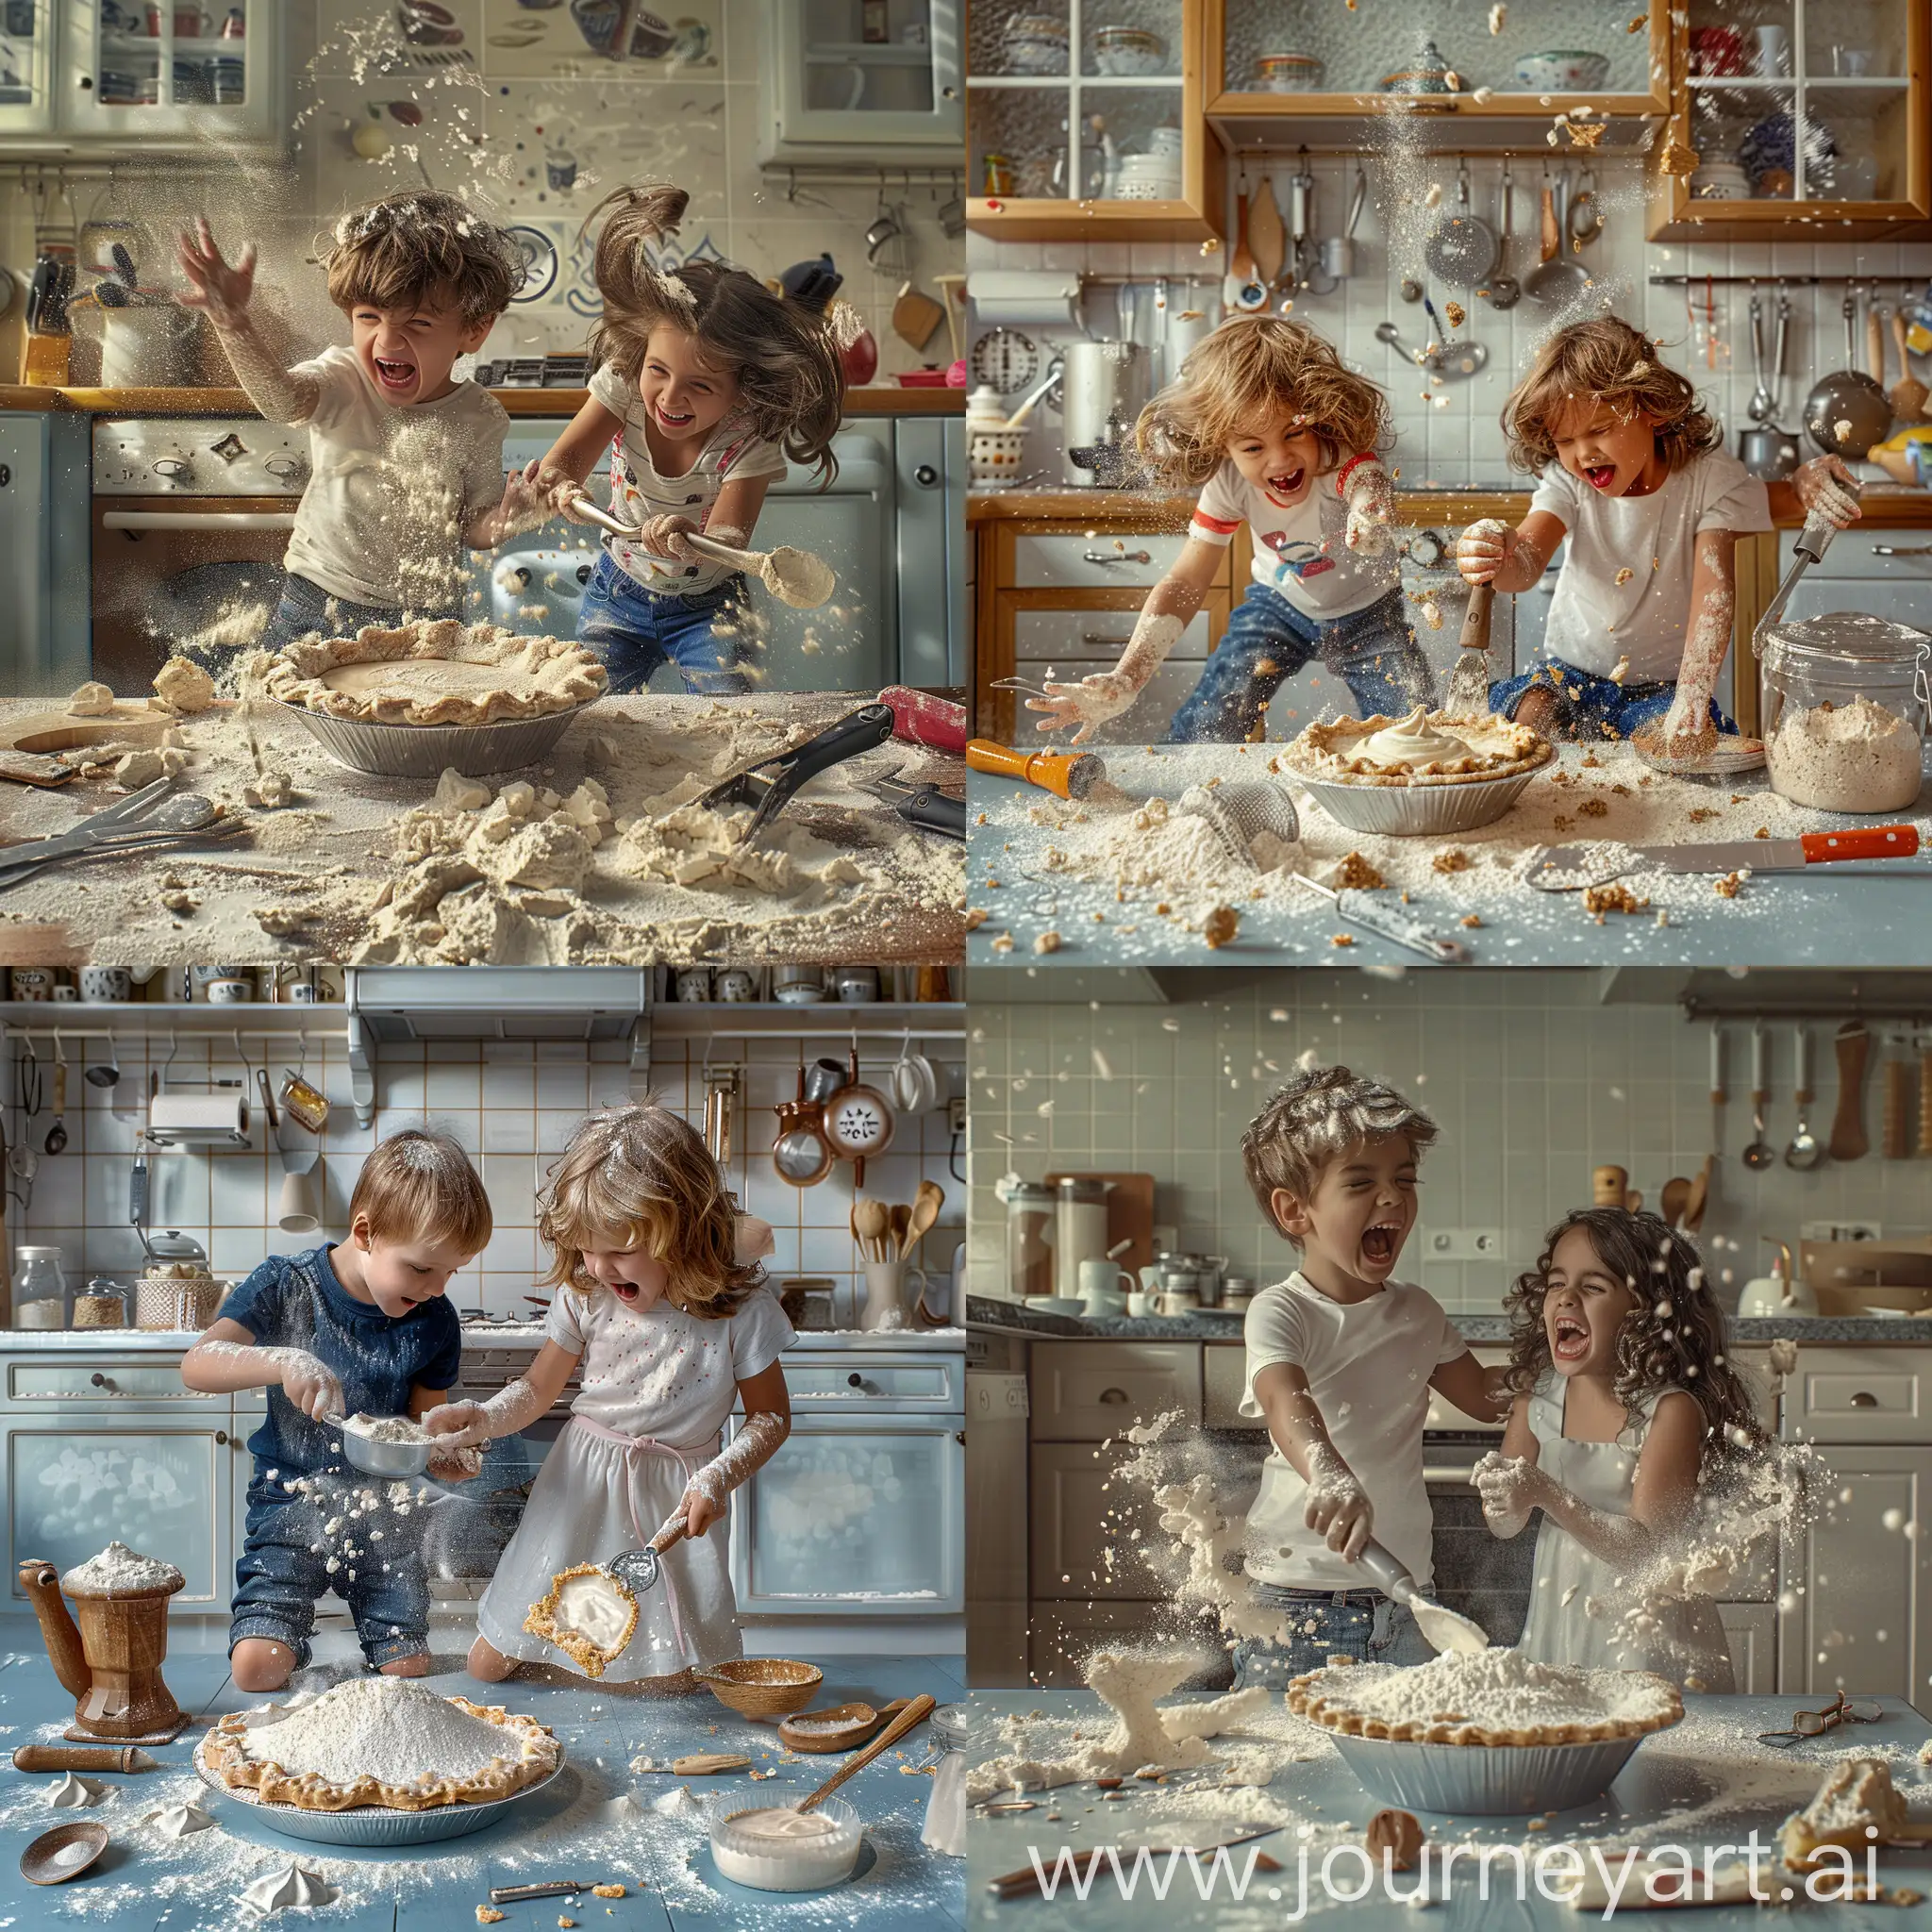 Мальчик и девочка веселятся и пытаются на кухне сделать пирог и всю кухню и самих себя обсыпали мукой, а также уронили крем для пирога и разные кухонные принадлежности на пол, фотография, гиперреализм, высокое разрешение